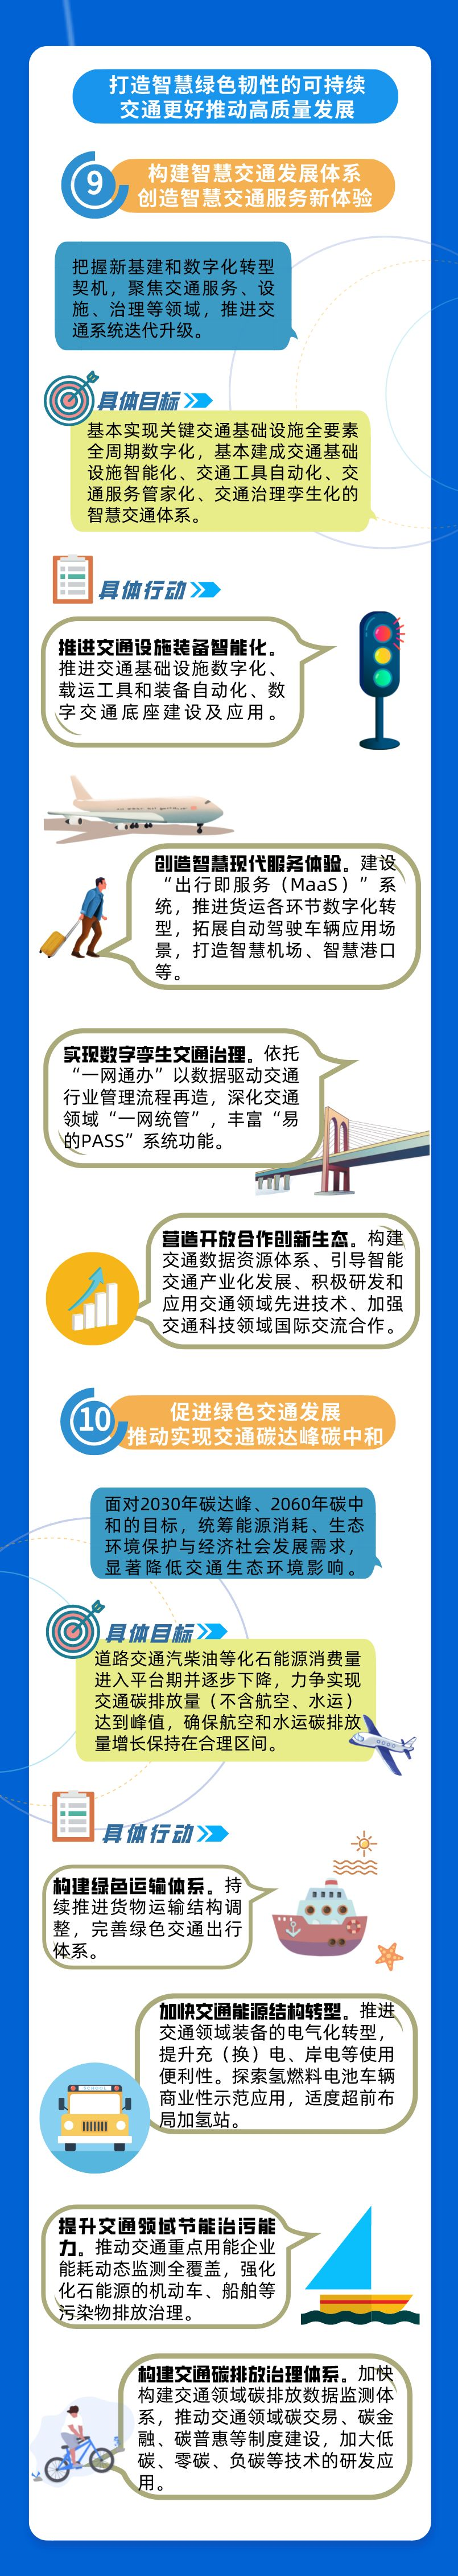 一图读懂 新一轮《上海市交通发展白皮书》6.png